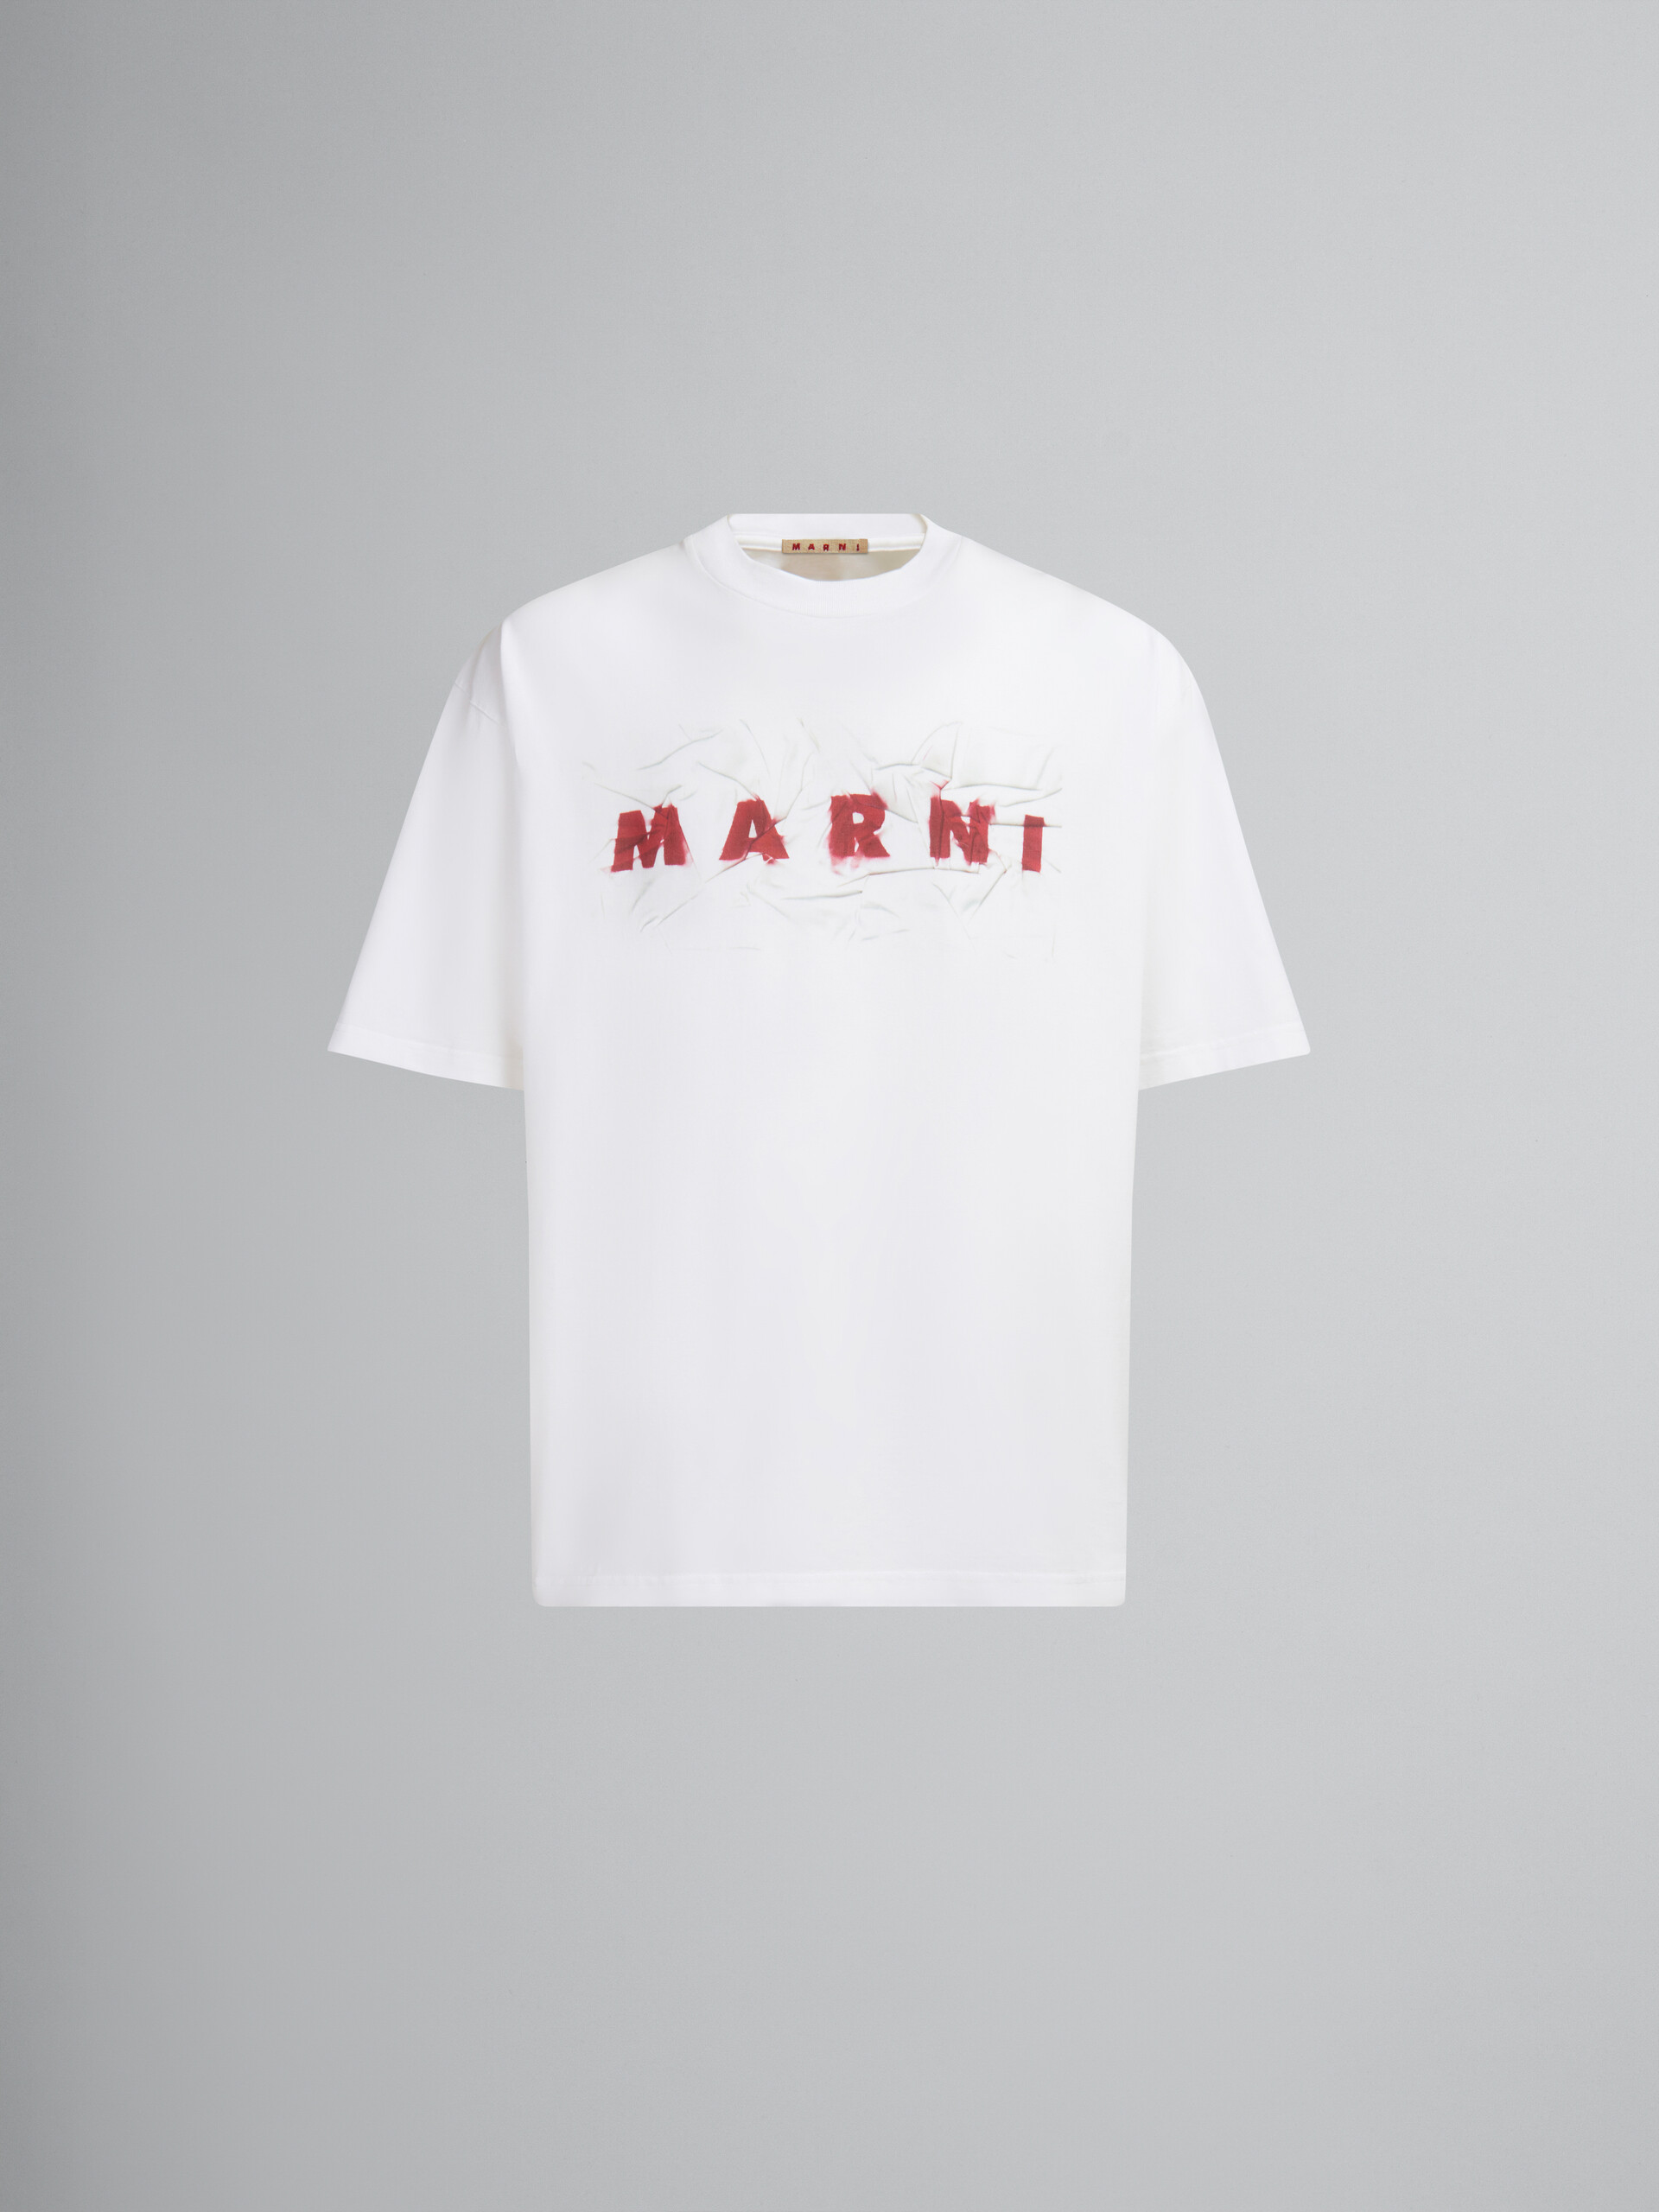 ホワイト オーガニックコットン製 Tシャツ、リンクル マルニロゴ - Tシャツ - Image 1